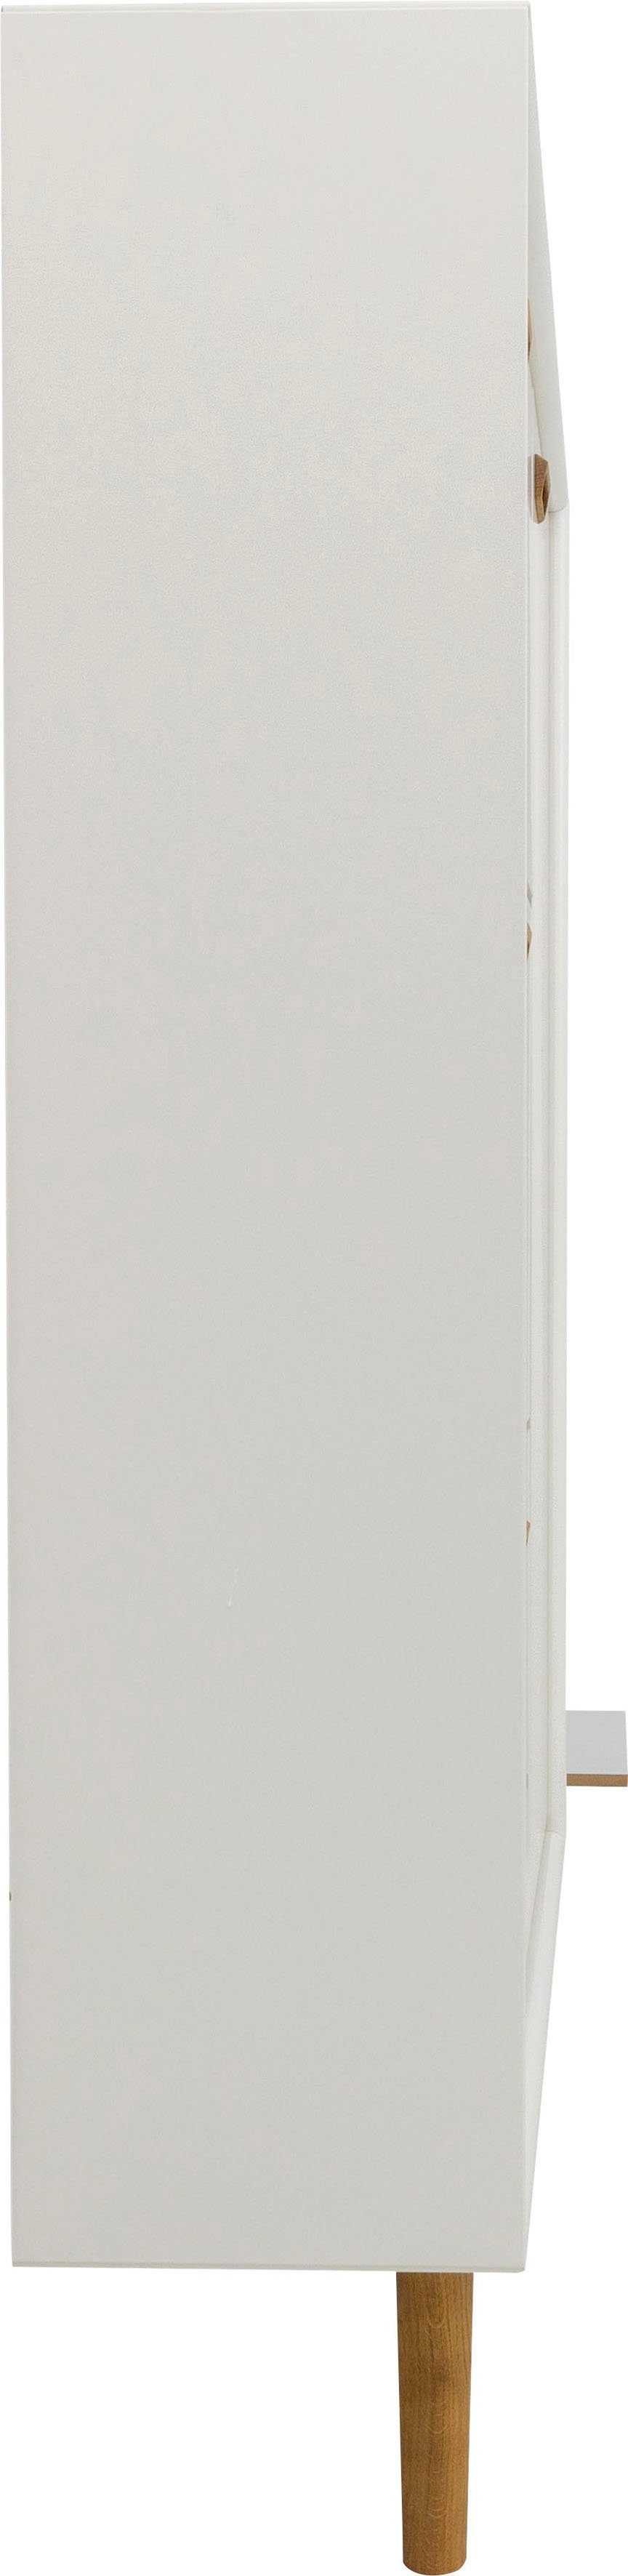 Tür und SVEA 3 Design Schuhschrank Tenzo Klappen, studio mit Tenzo 1 white Design von